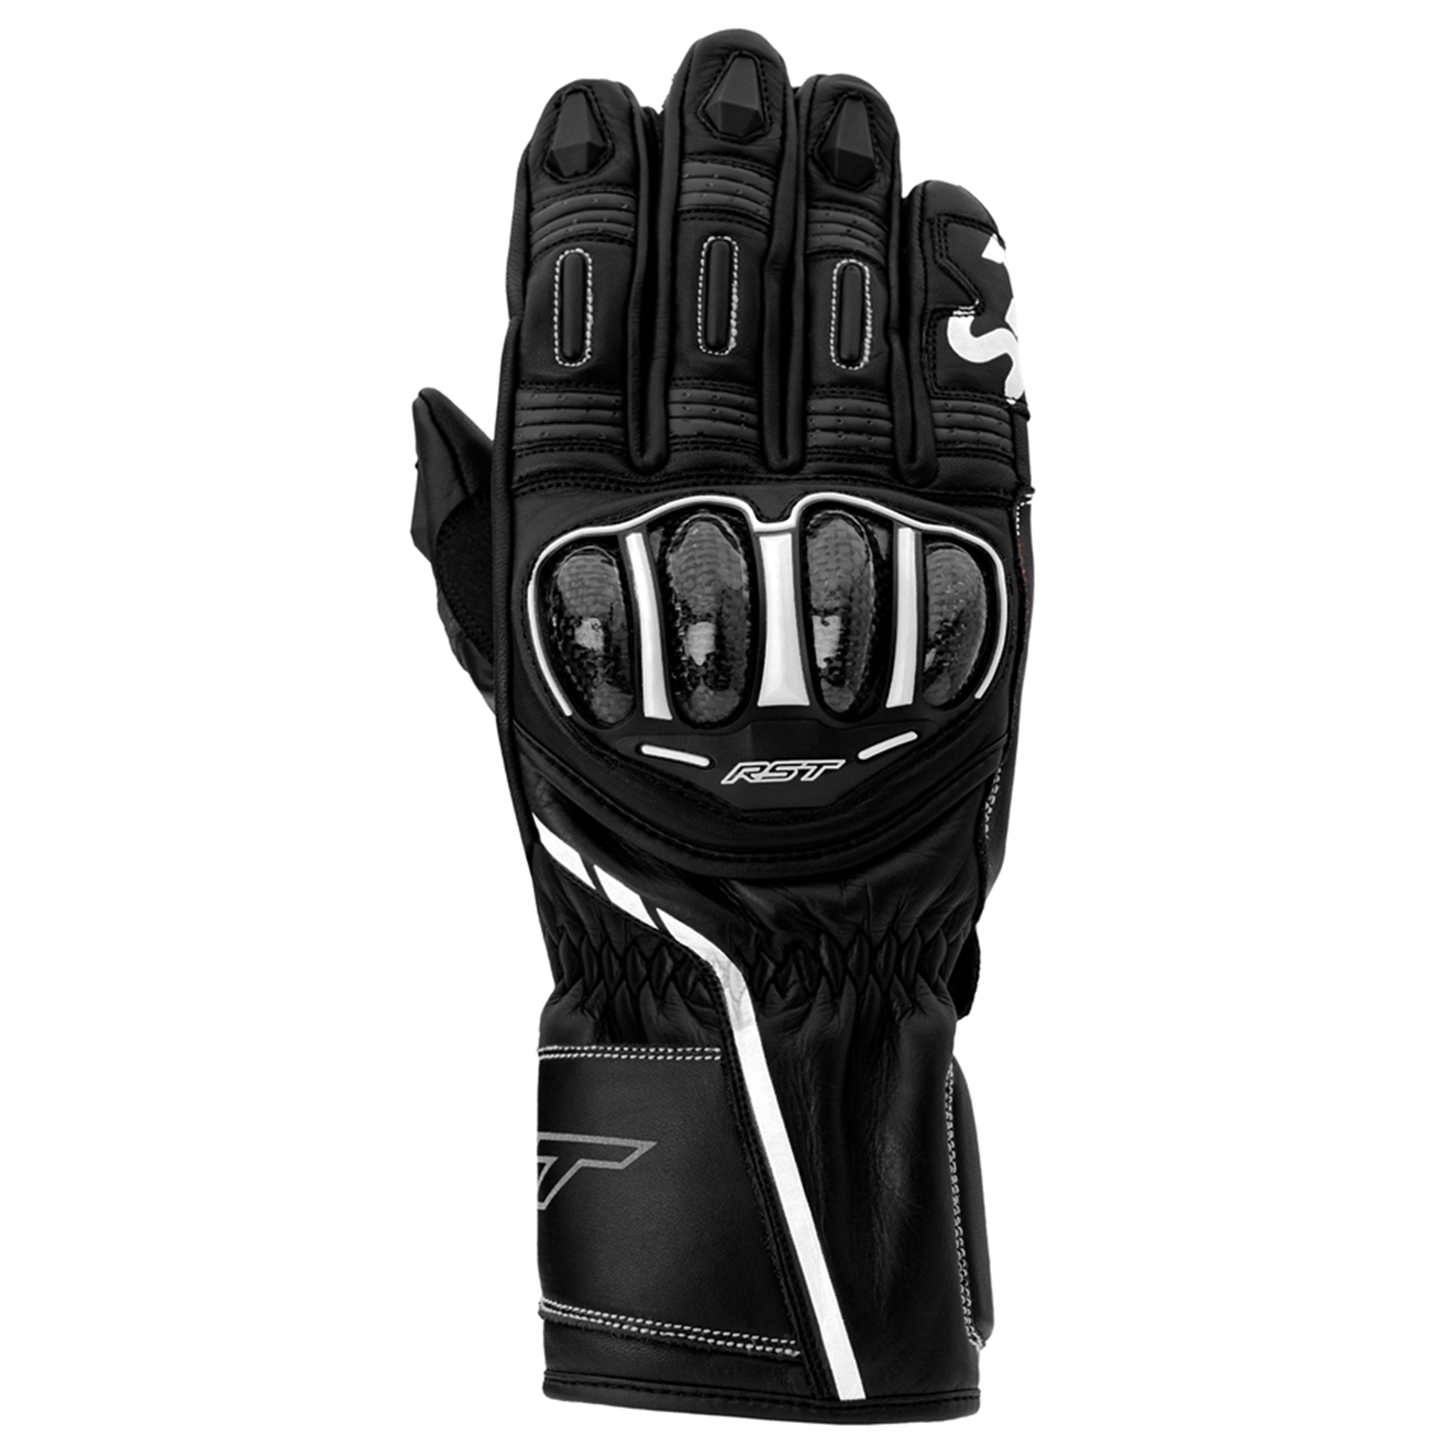 RST S1 CE Men's Gloves - Black/White (3033)